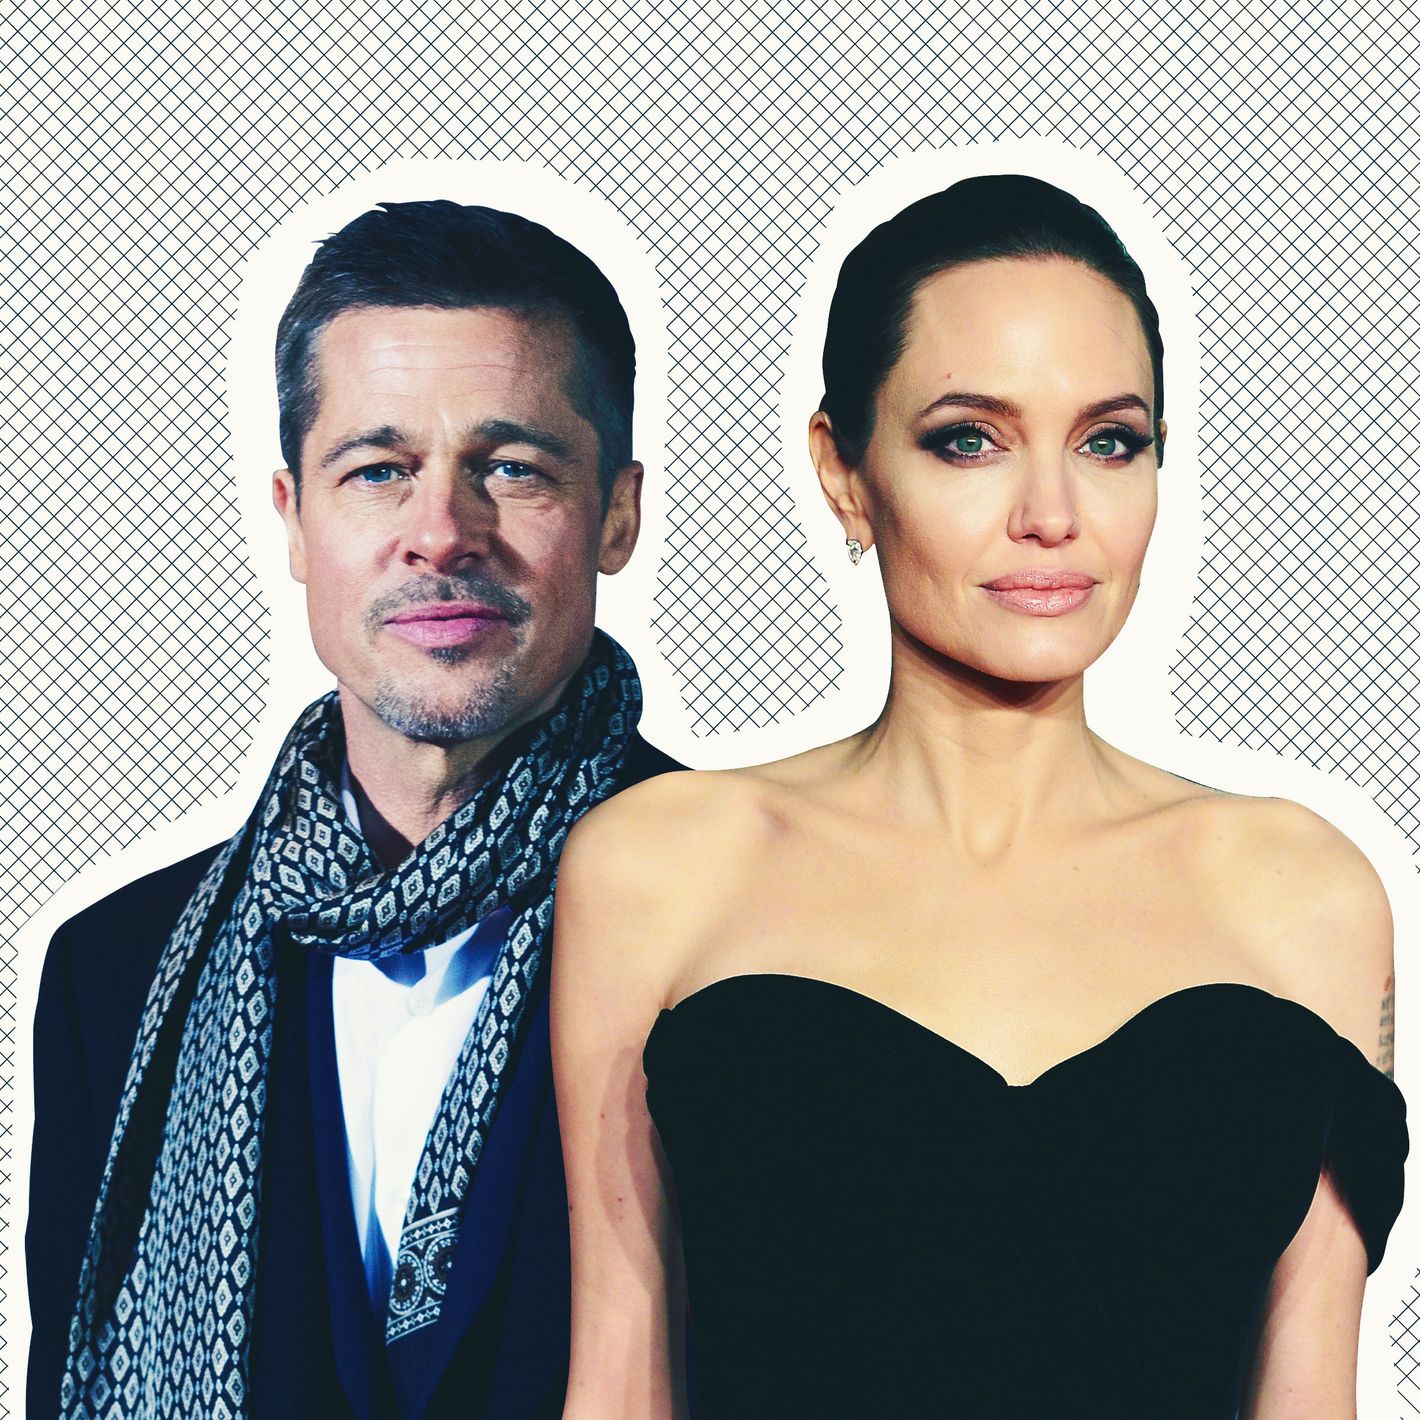 Anjelina Jolie Hot Fucks - Does Angelina Jolie Have a New 'Millionaire' Boyfriend?